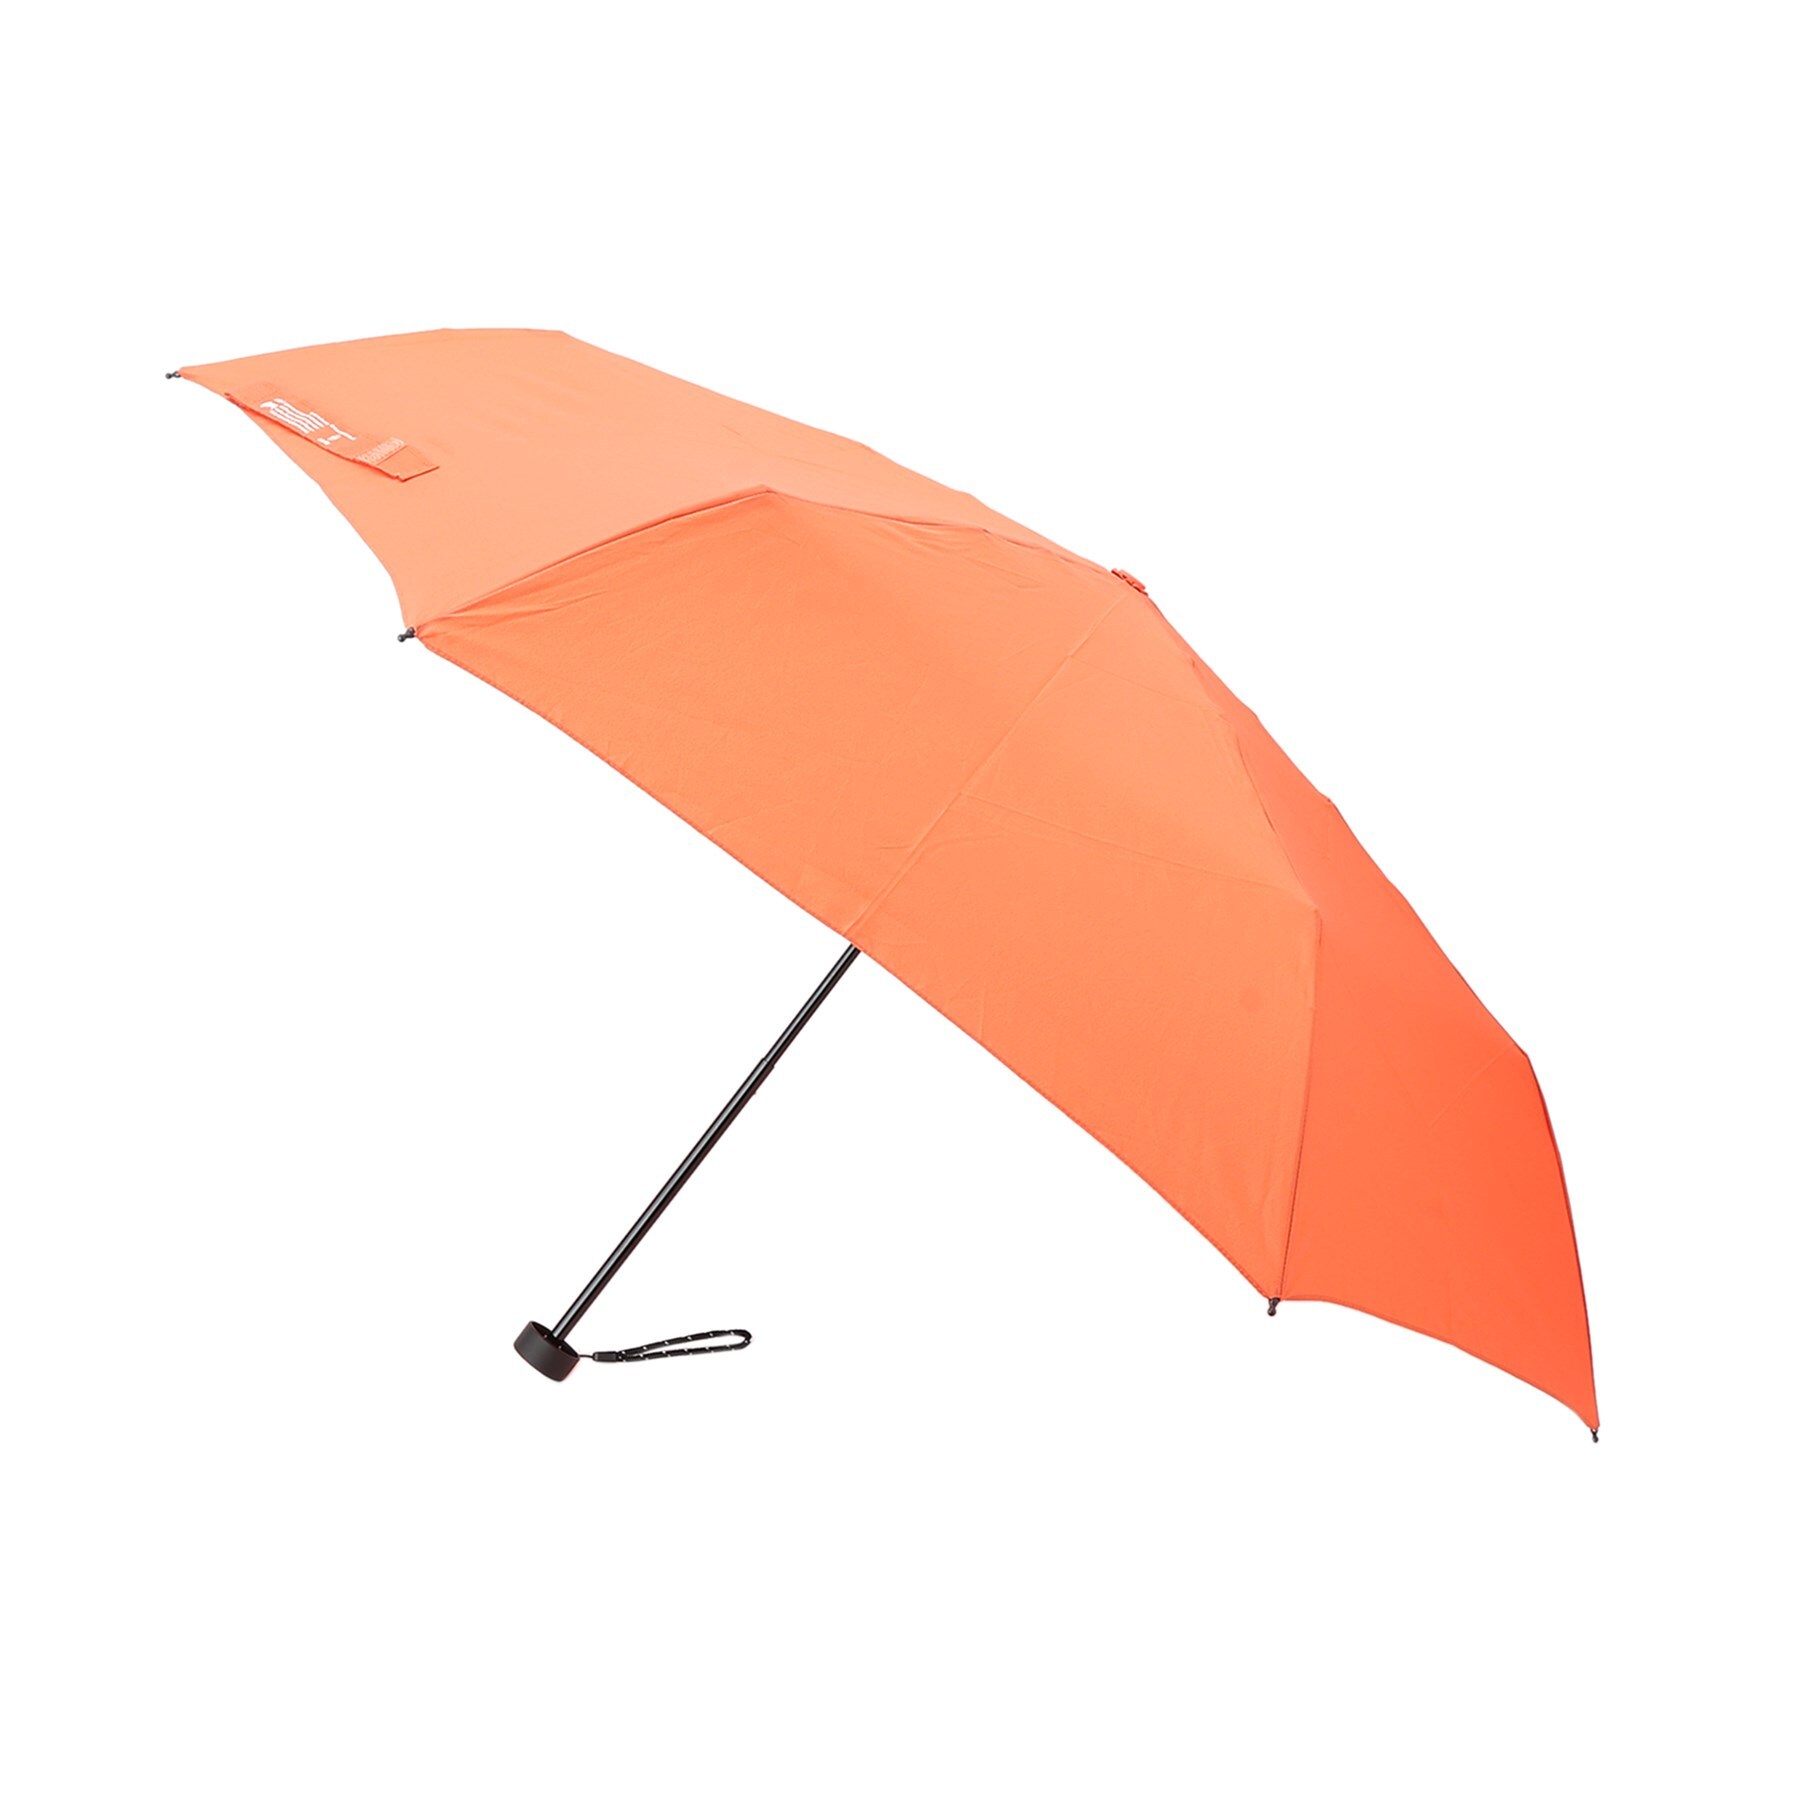 ギャレスト(GALLEST)のU-DAY RE:PET 折りたたみ傘 オレンジ(067)